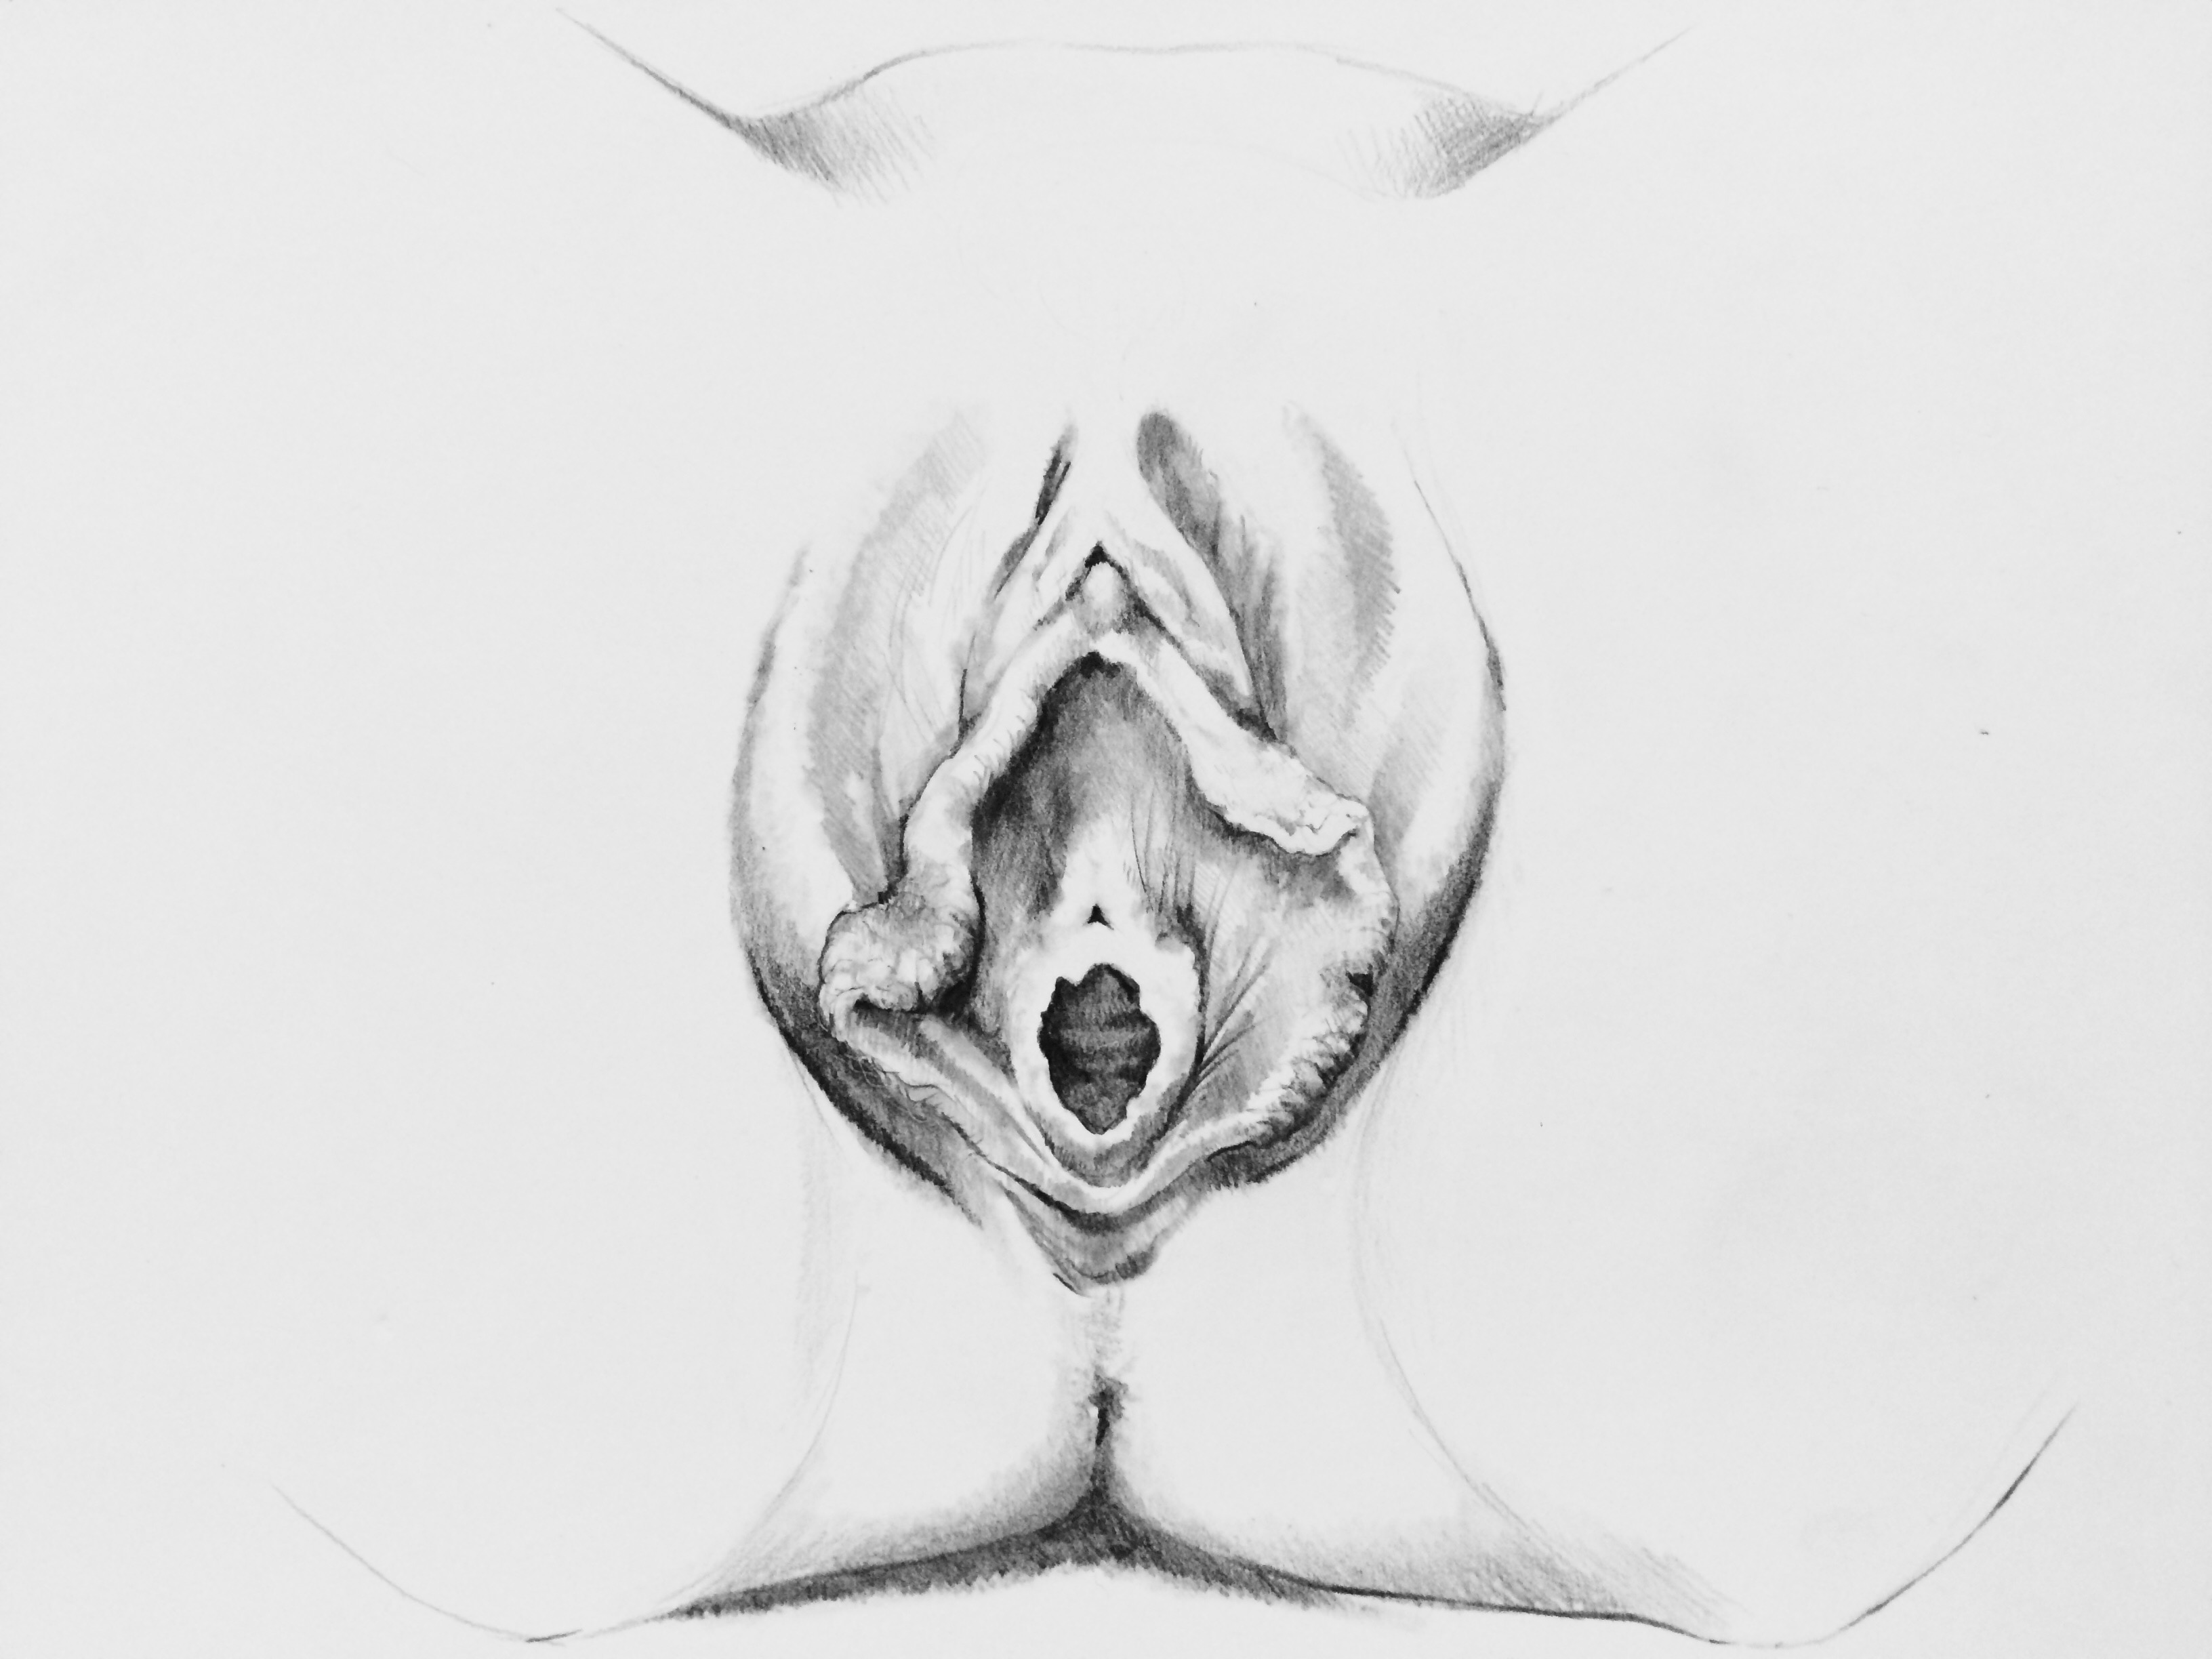 hymen female anatomy